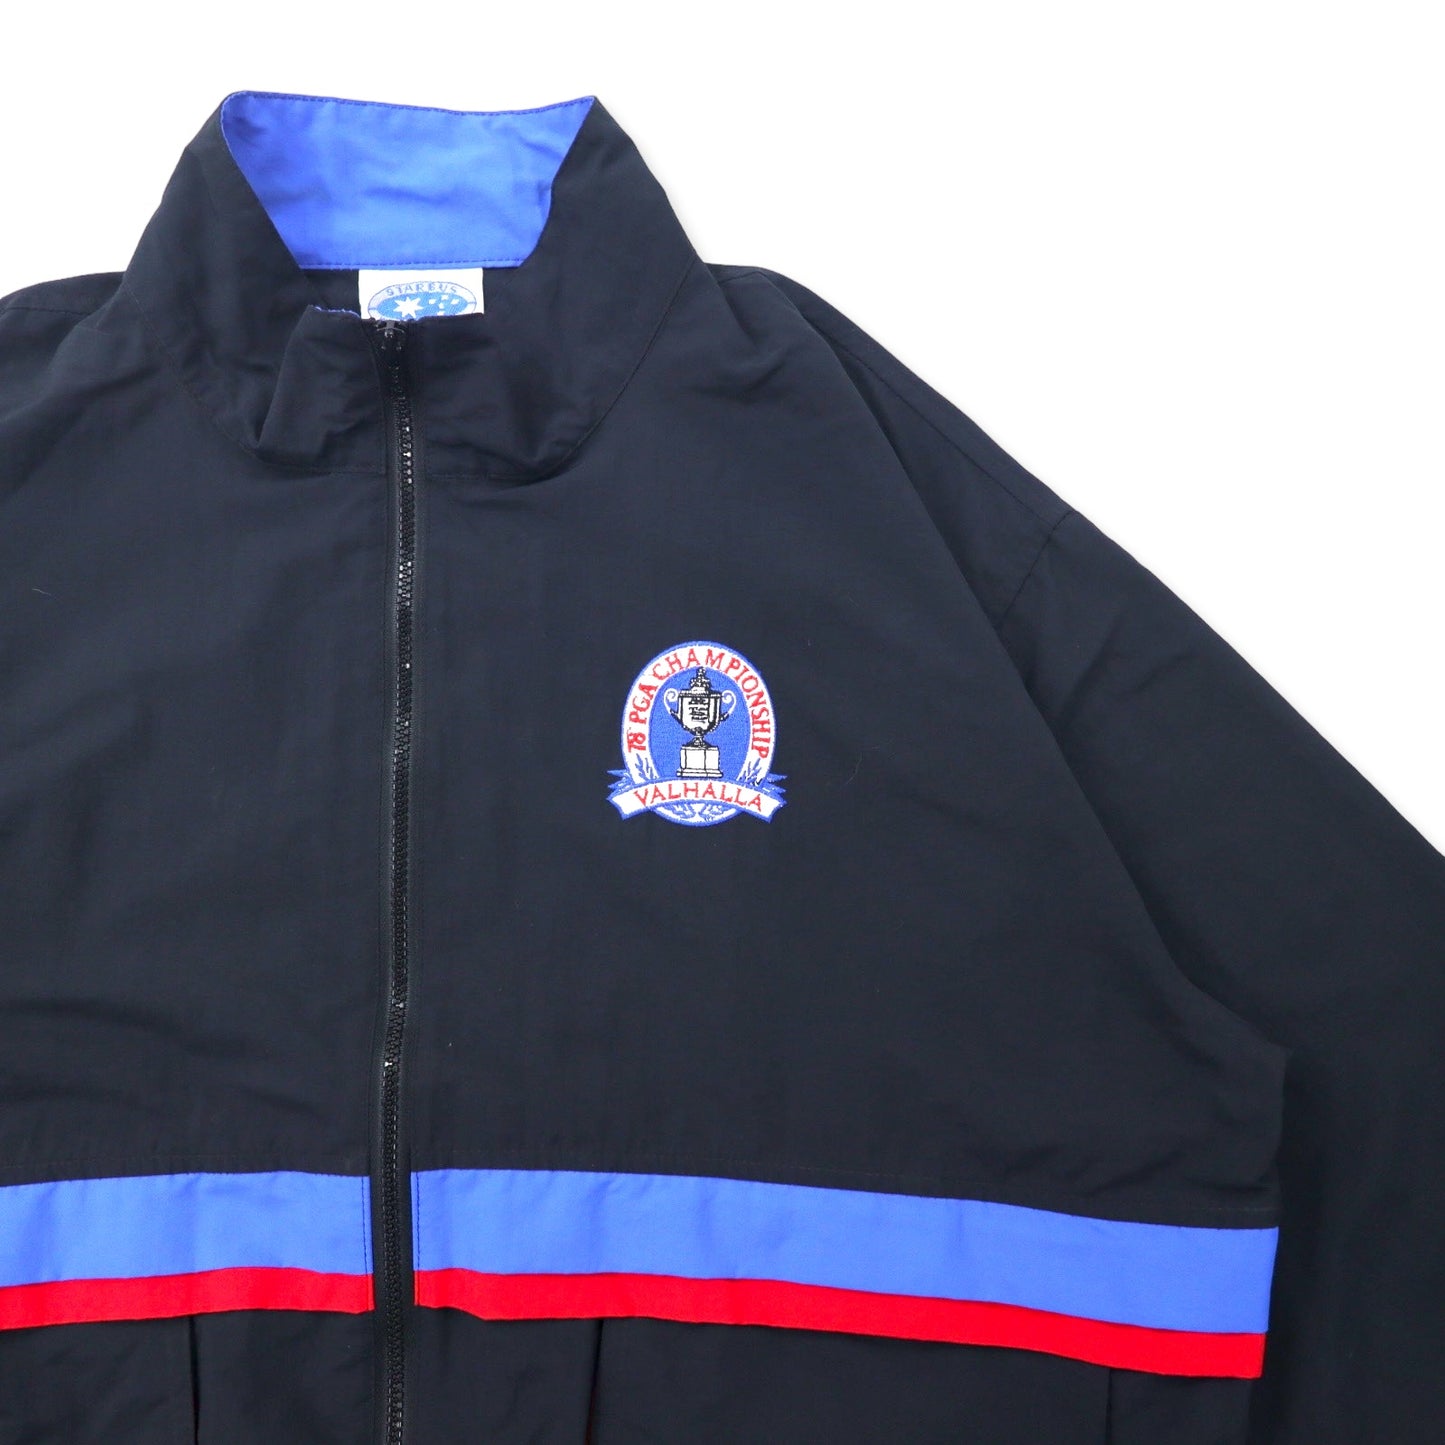 STARBUS WEATHER SCREEN 90年代 ナイロンジャケット L ブラック 78' PGA CHAMPIONSHIP 刺繍 ビッグサイズ